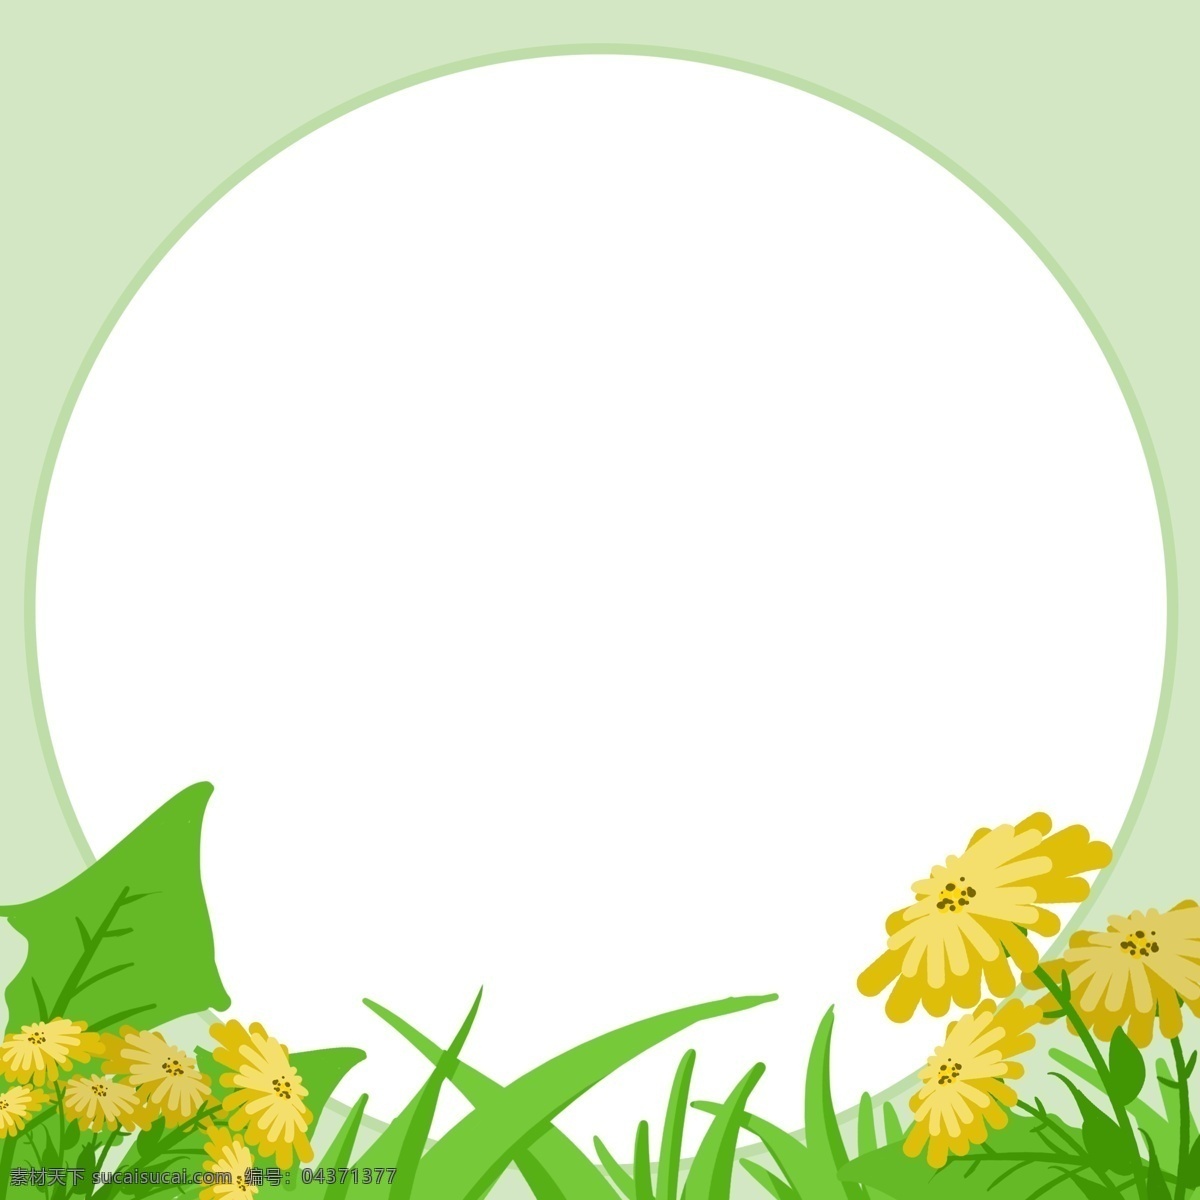 手绘 春季 小草 边框 绿色的小草 黄色的花朵 卡通边框 手绘春季边框 春季景色边框 漂亮的边框